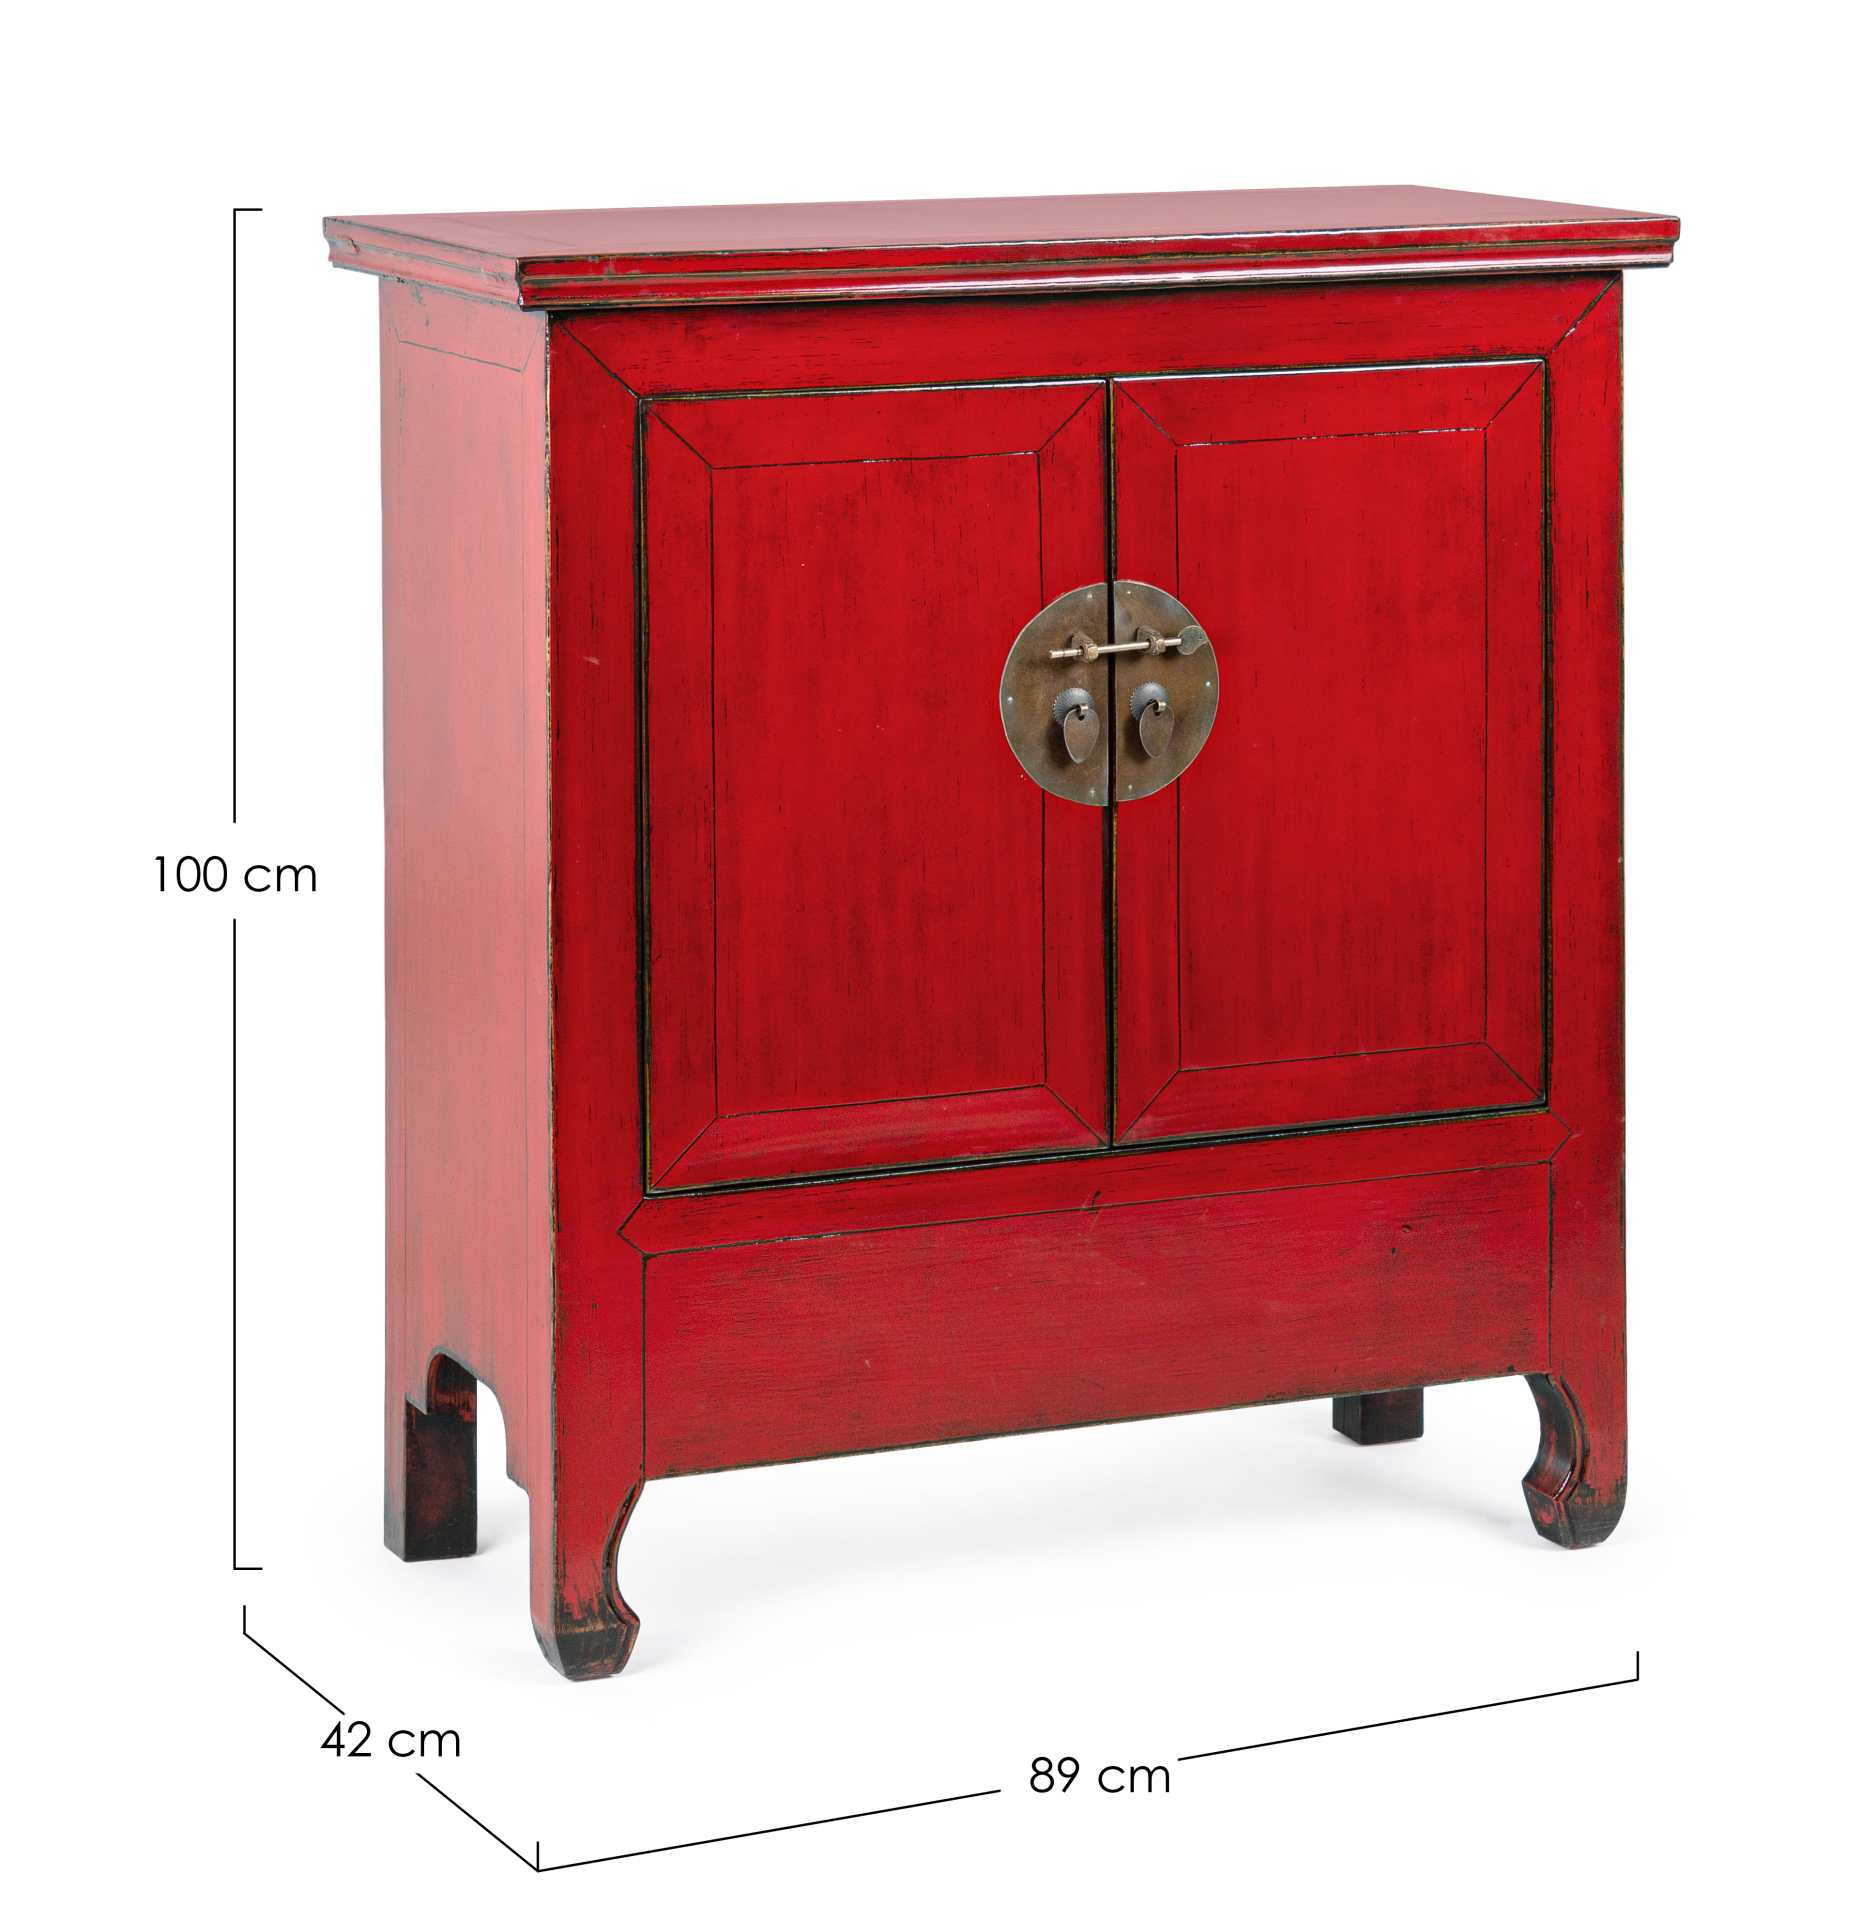 Die Kommode Jinan überzeugt mit ihrem klassischen Design. Gefertigt wurde sie aus Ulmen-Holz, welches einen roten Farbton besitzt. Das Gestell ist auch aus Ulmen-Holz. Die Kommode verfügt über zwei Türen. Die Breite beträgt 89 cm.